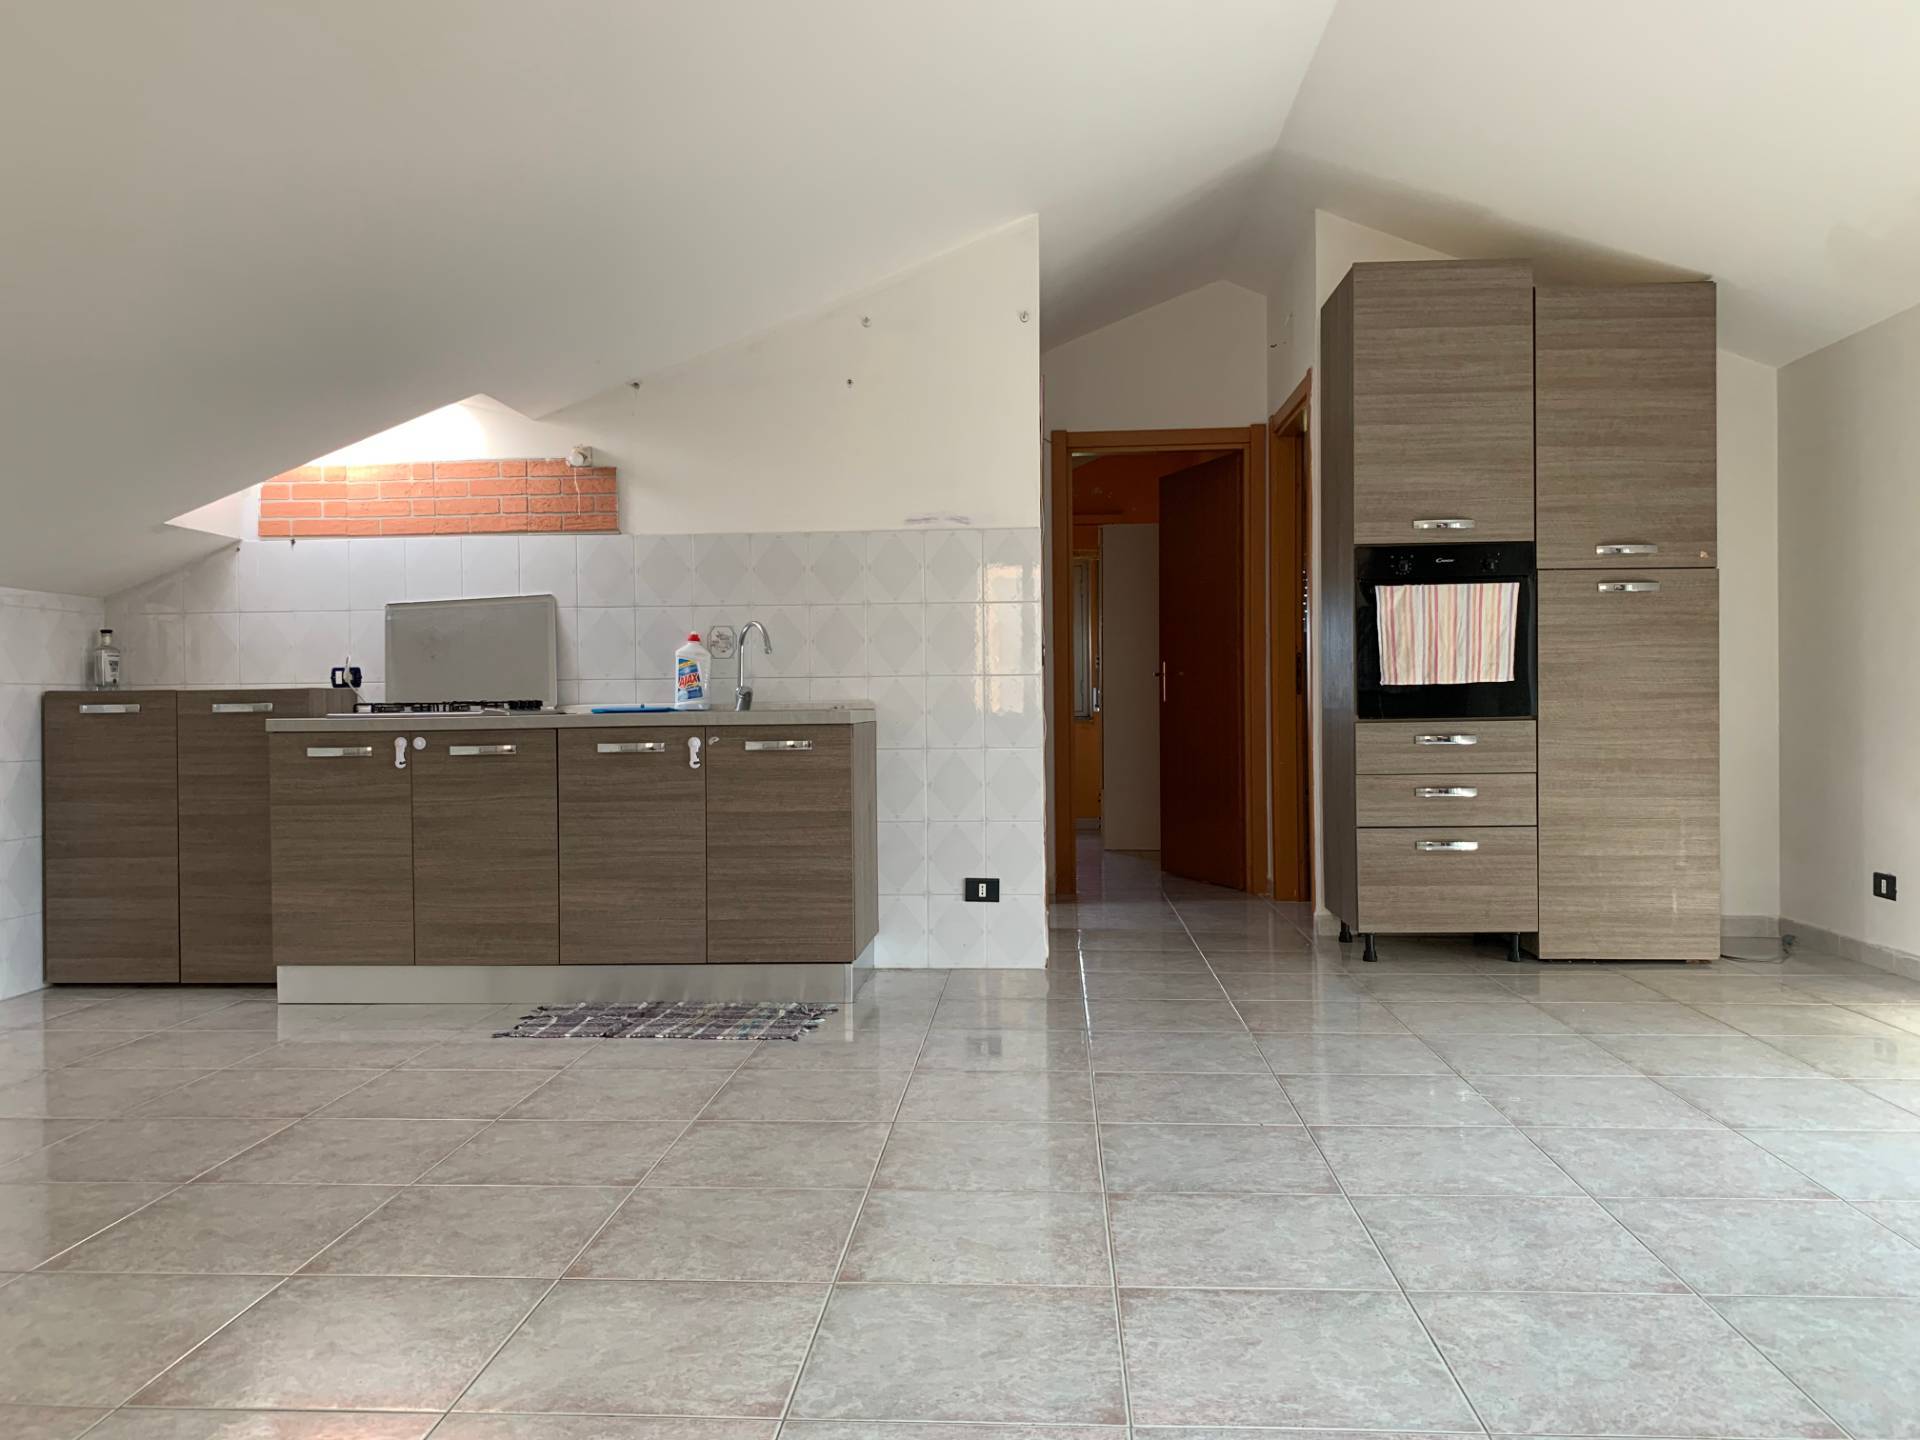 Appartamento in affitto a Squillace, 3 locali, zona Località: Lido, prezzo € 350 | PortaleAgenzieImmobiliari.it